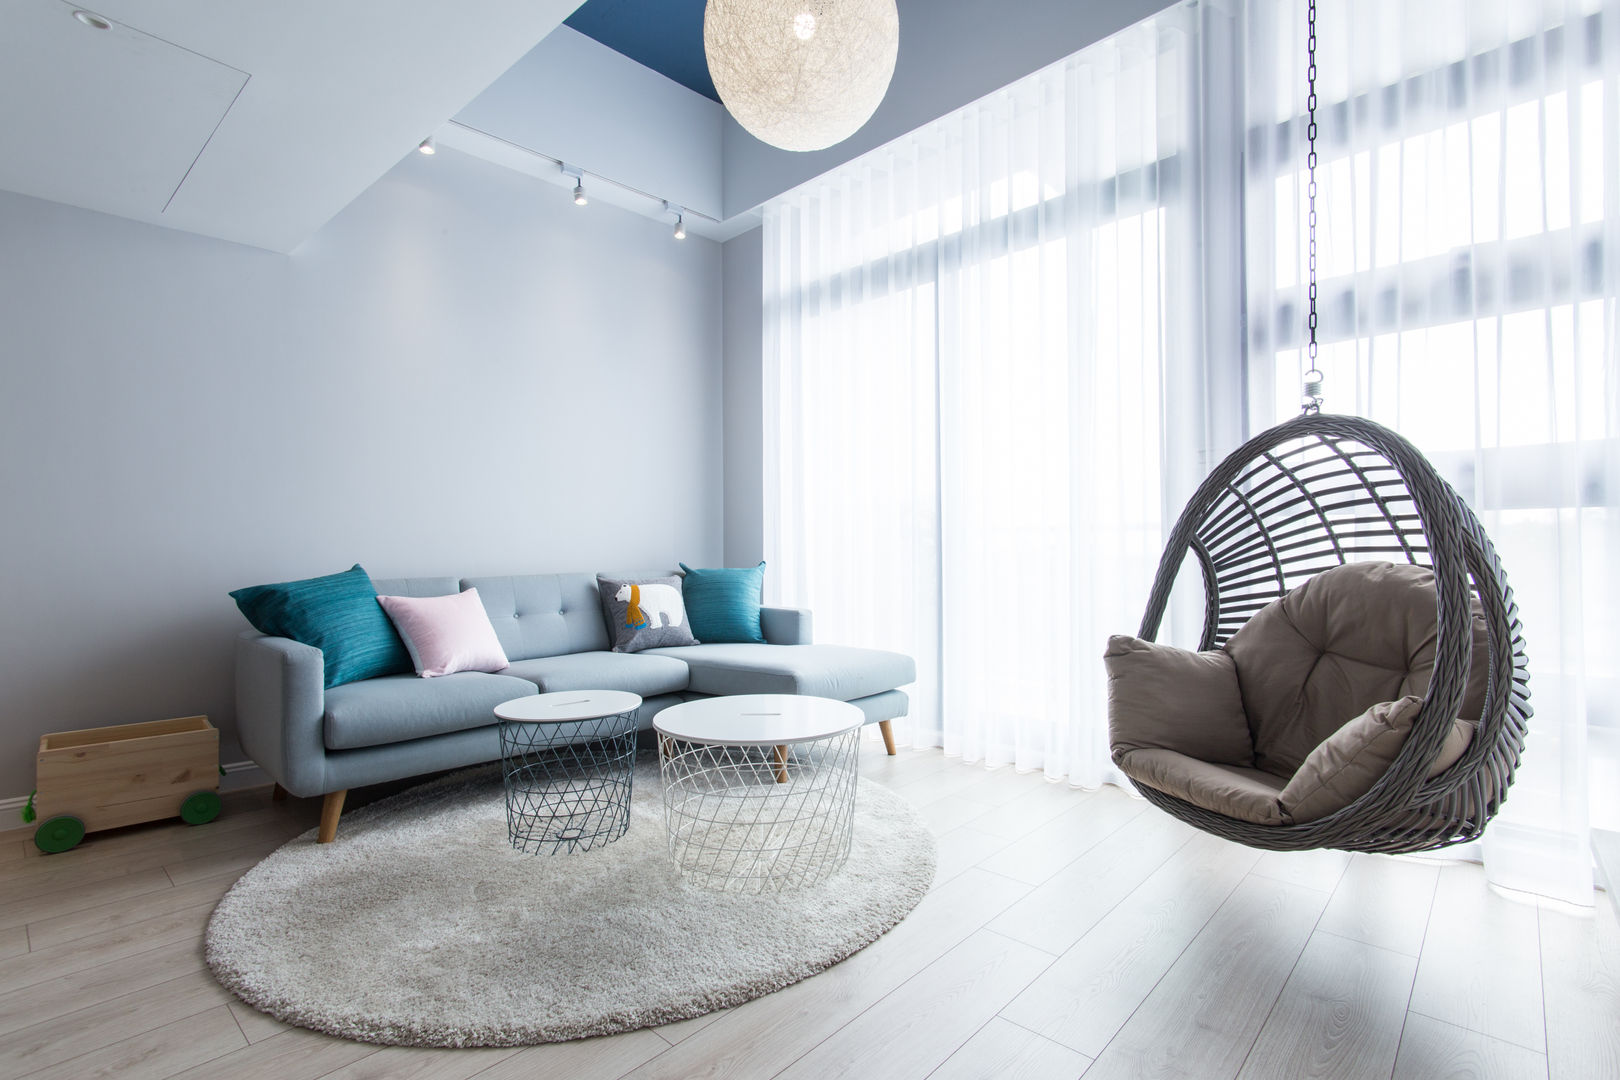 涵松樓-北歐風, 宅即變空間微整形 宅即變空間微整形 Scandinavian style living room